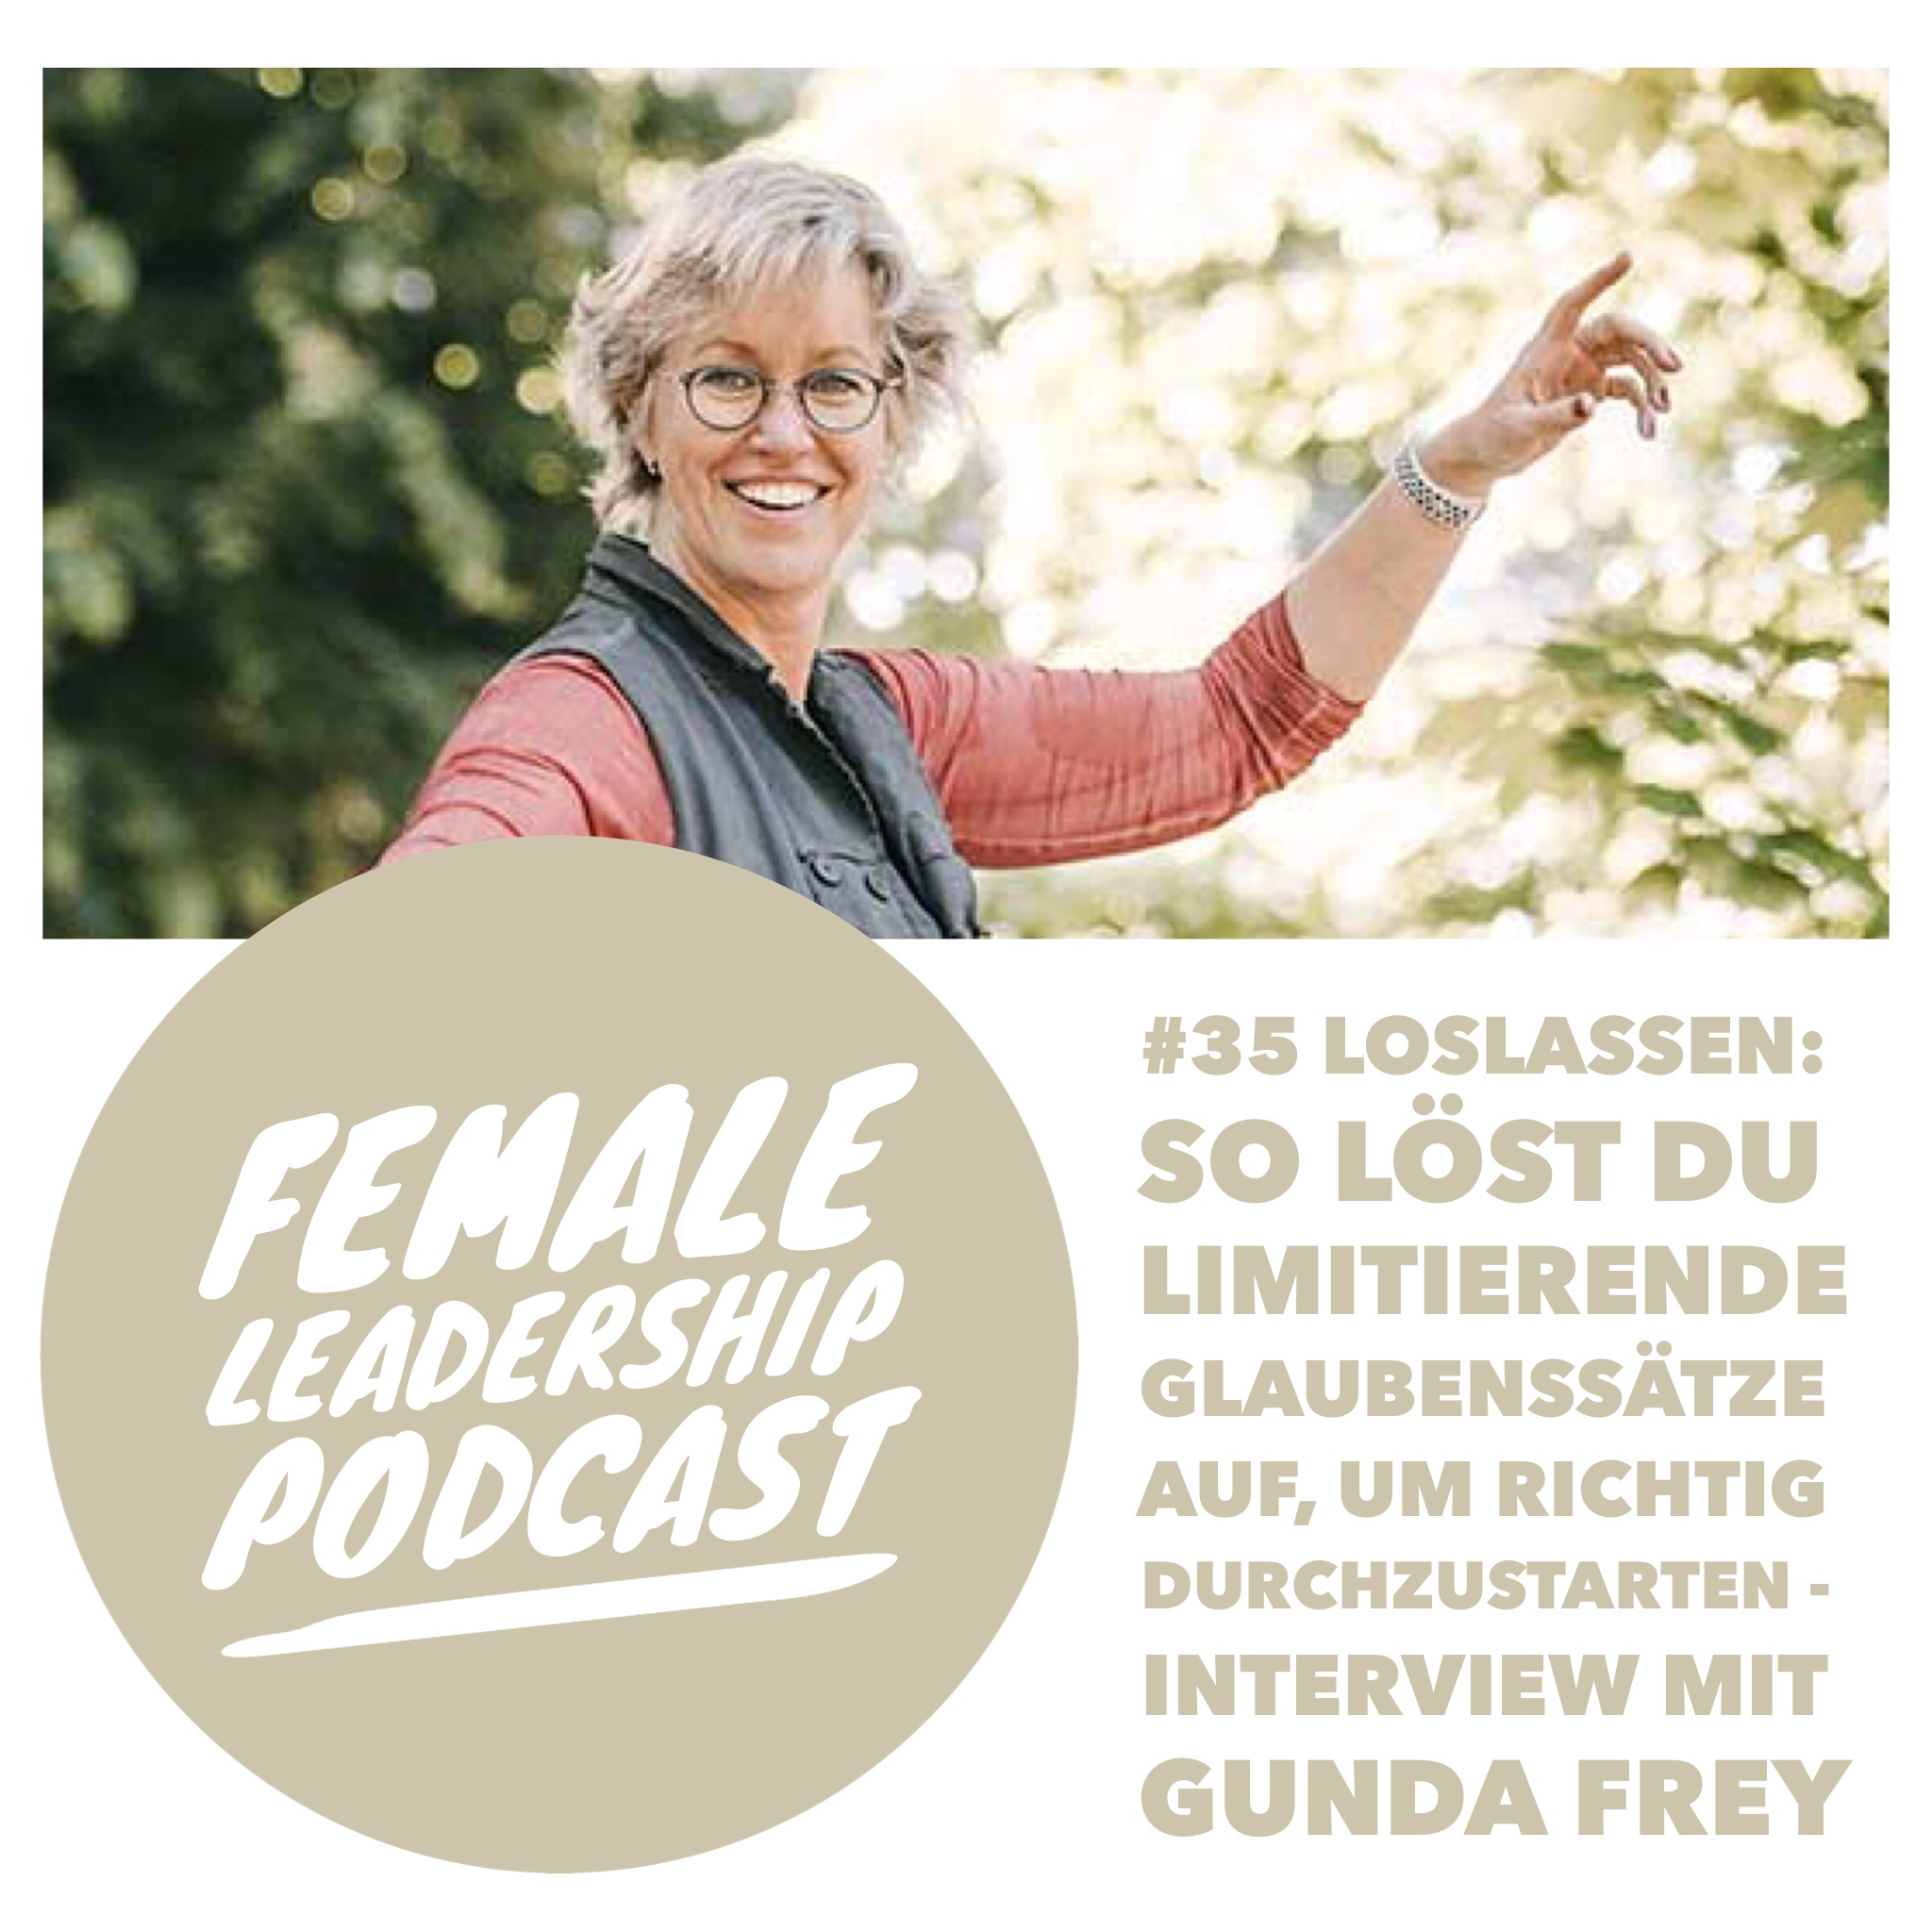 #35 Loslassen: So löst du limitierende Glaubenssätze auf, um richtig durchzustarten - Interview mit Gunda Frey